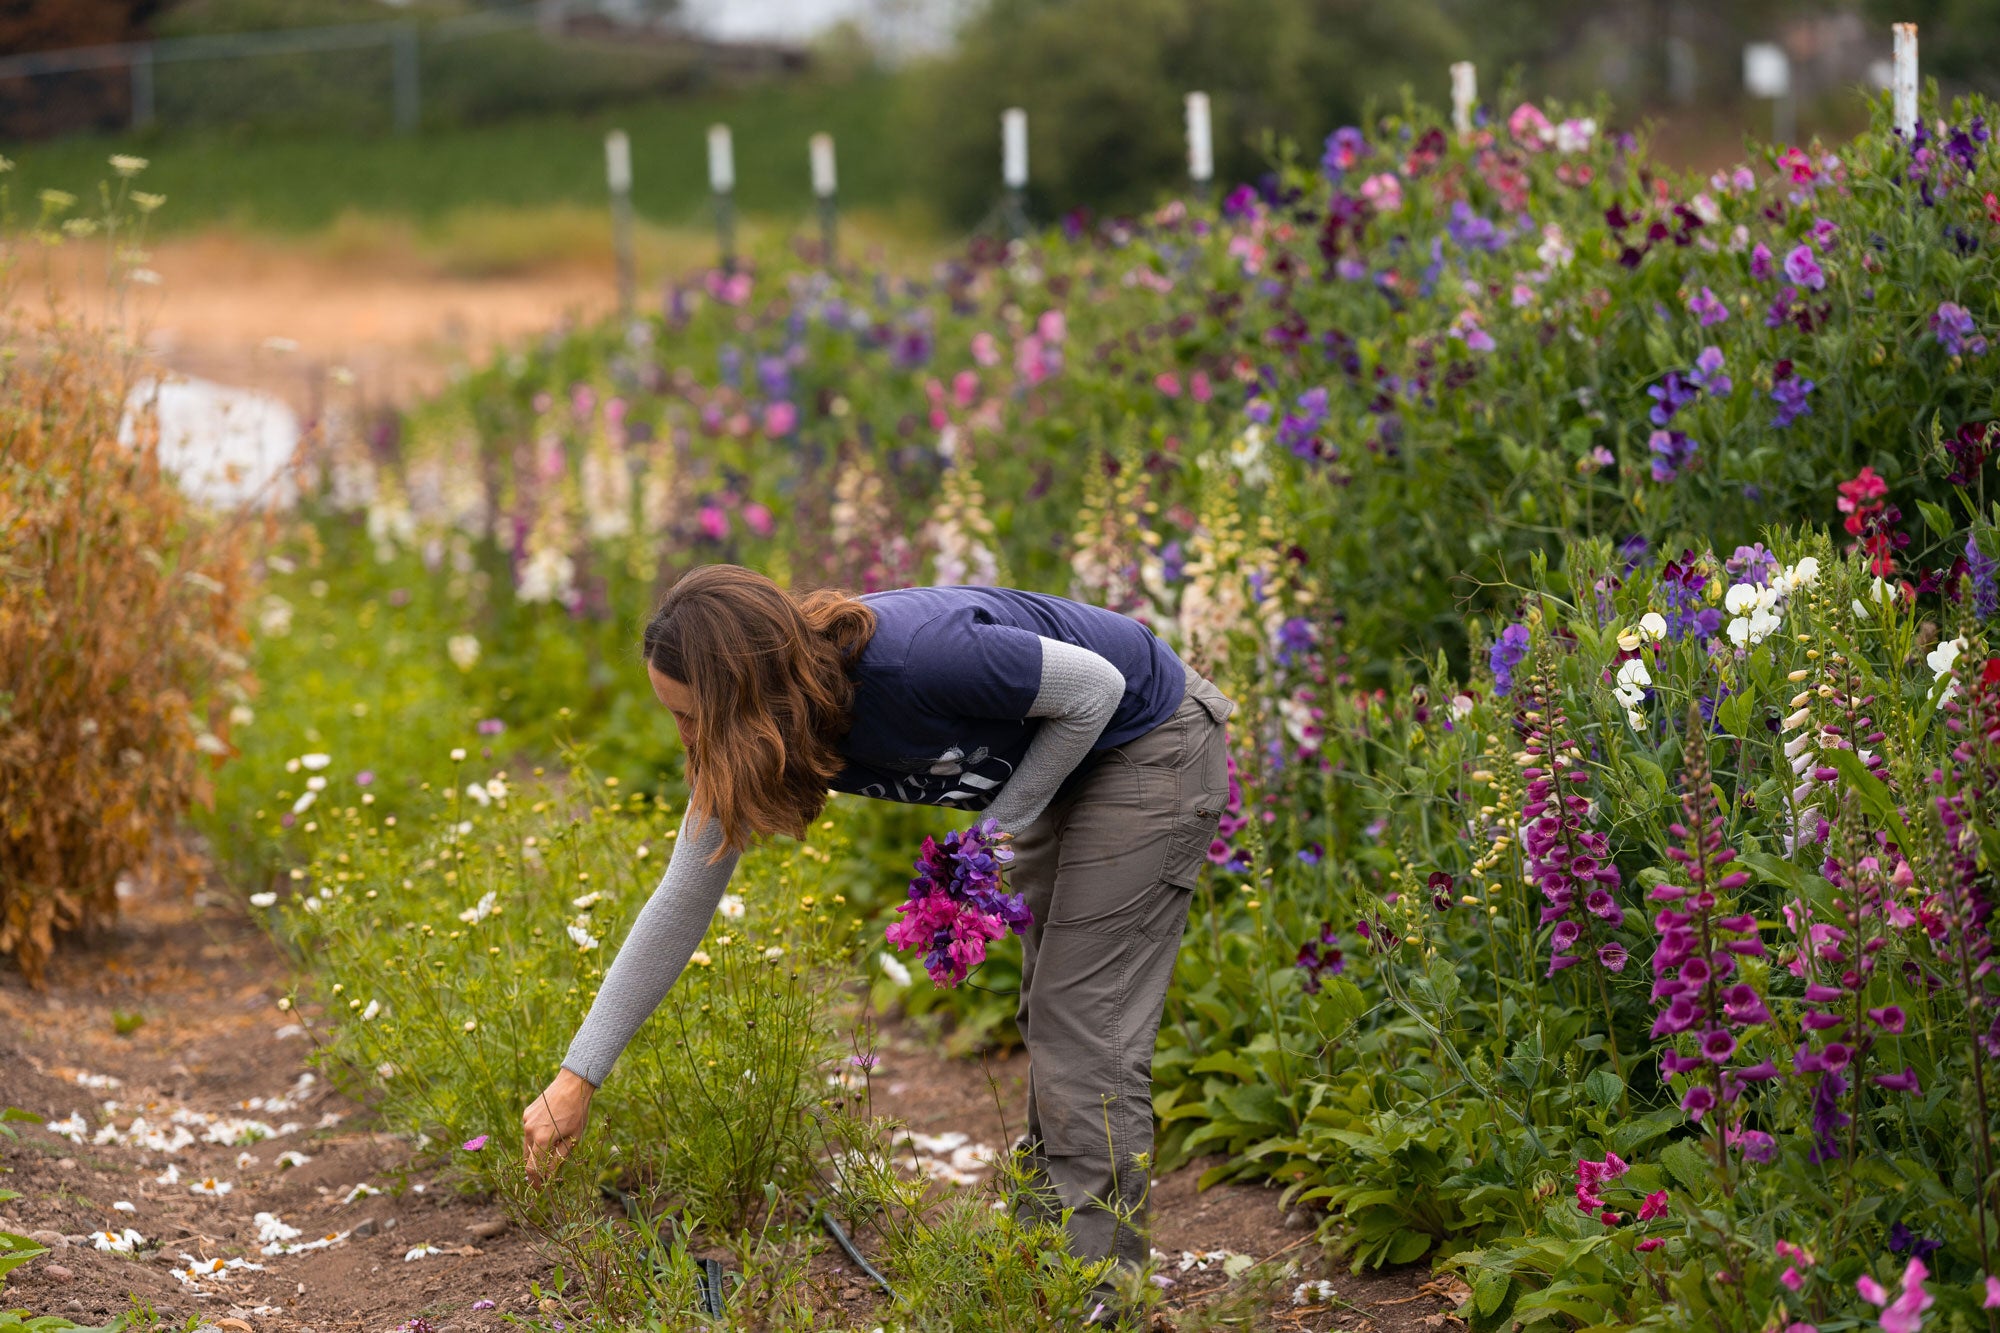 Woman gardening at Beeworthy organic flower farm